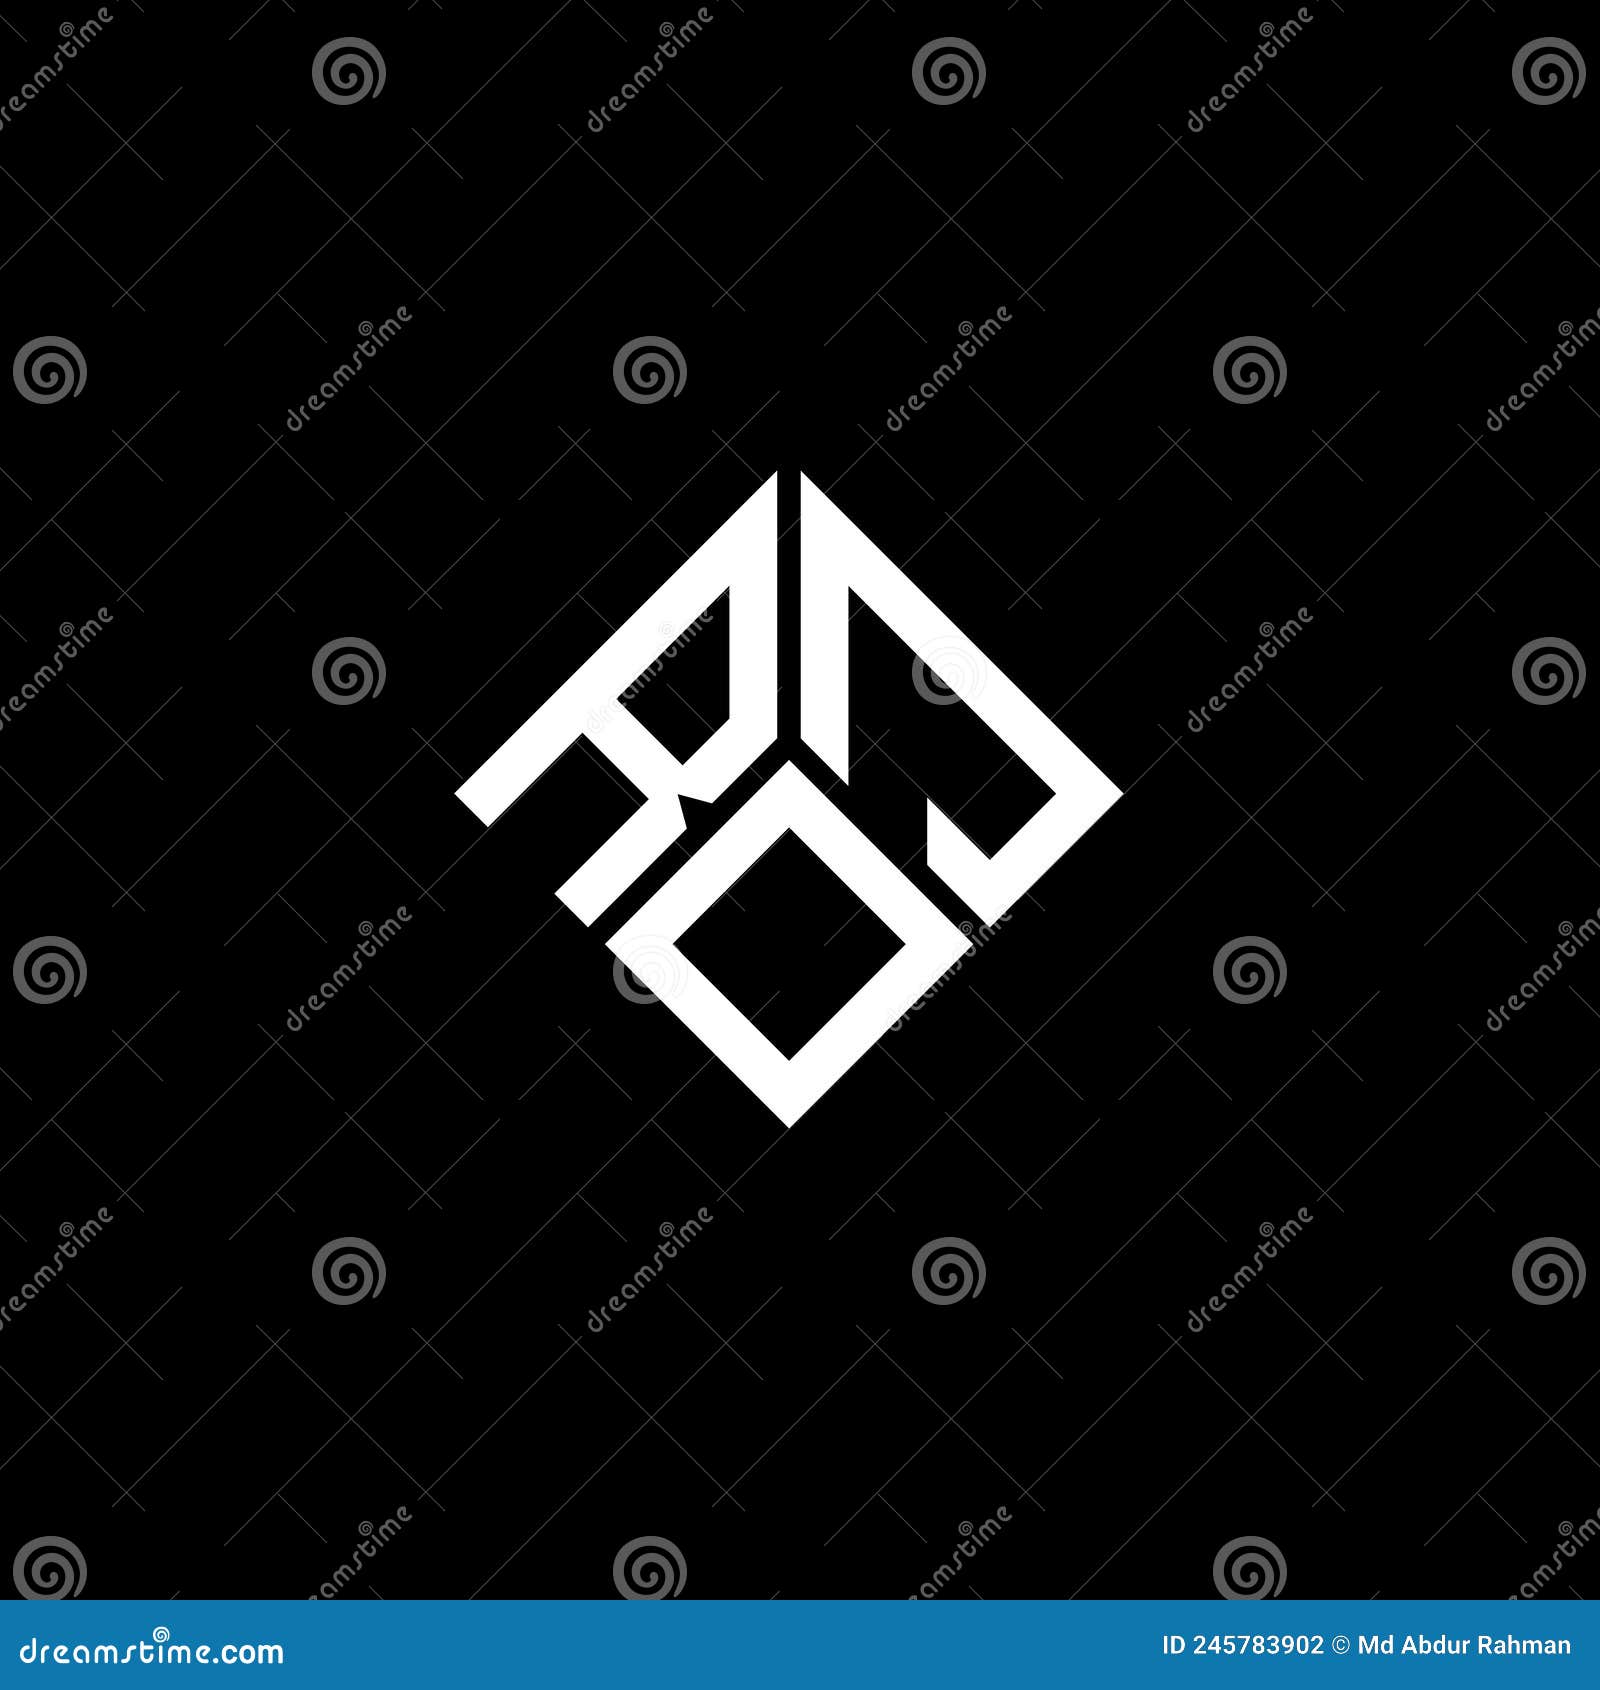 roj letter logo  on black background. roj creative initials letter logo concept. roj letter 